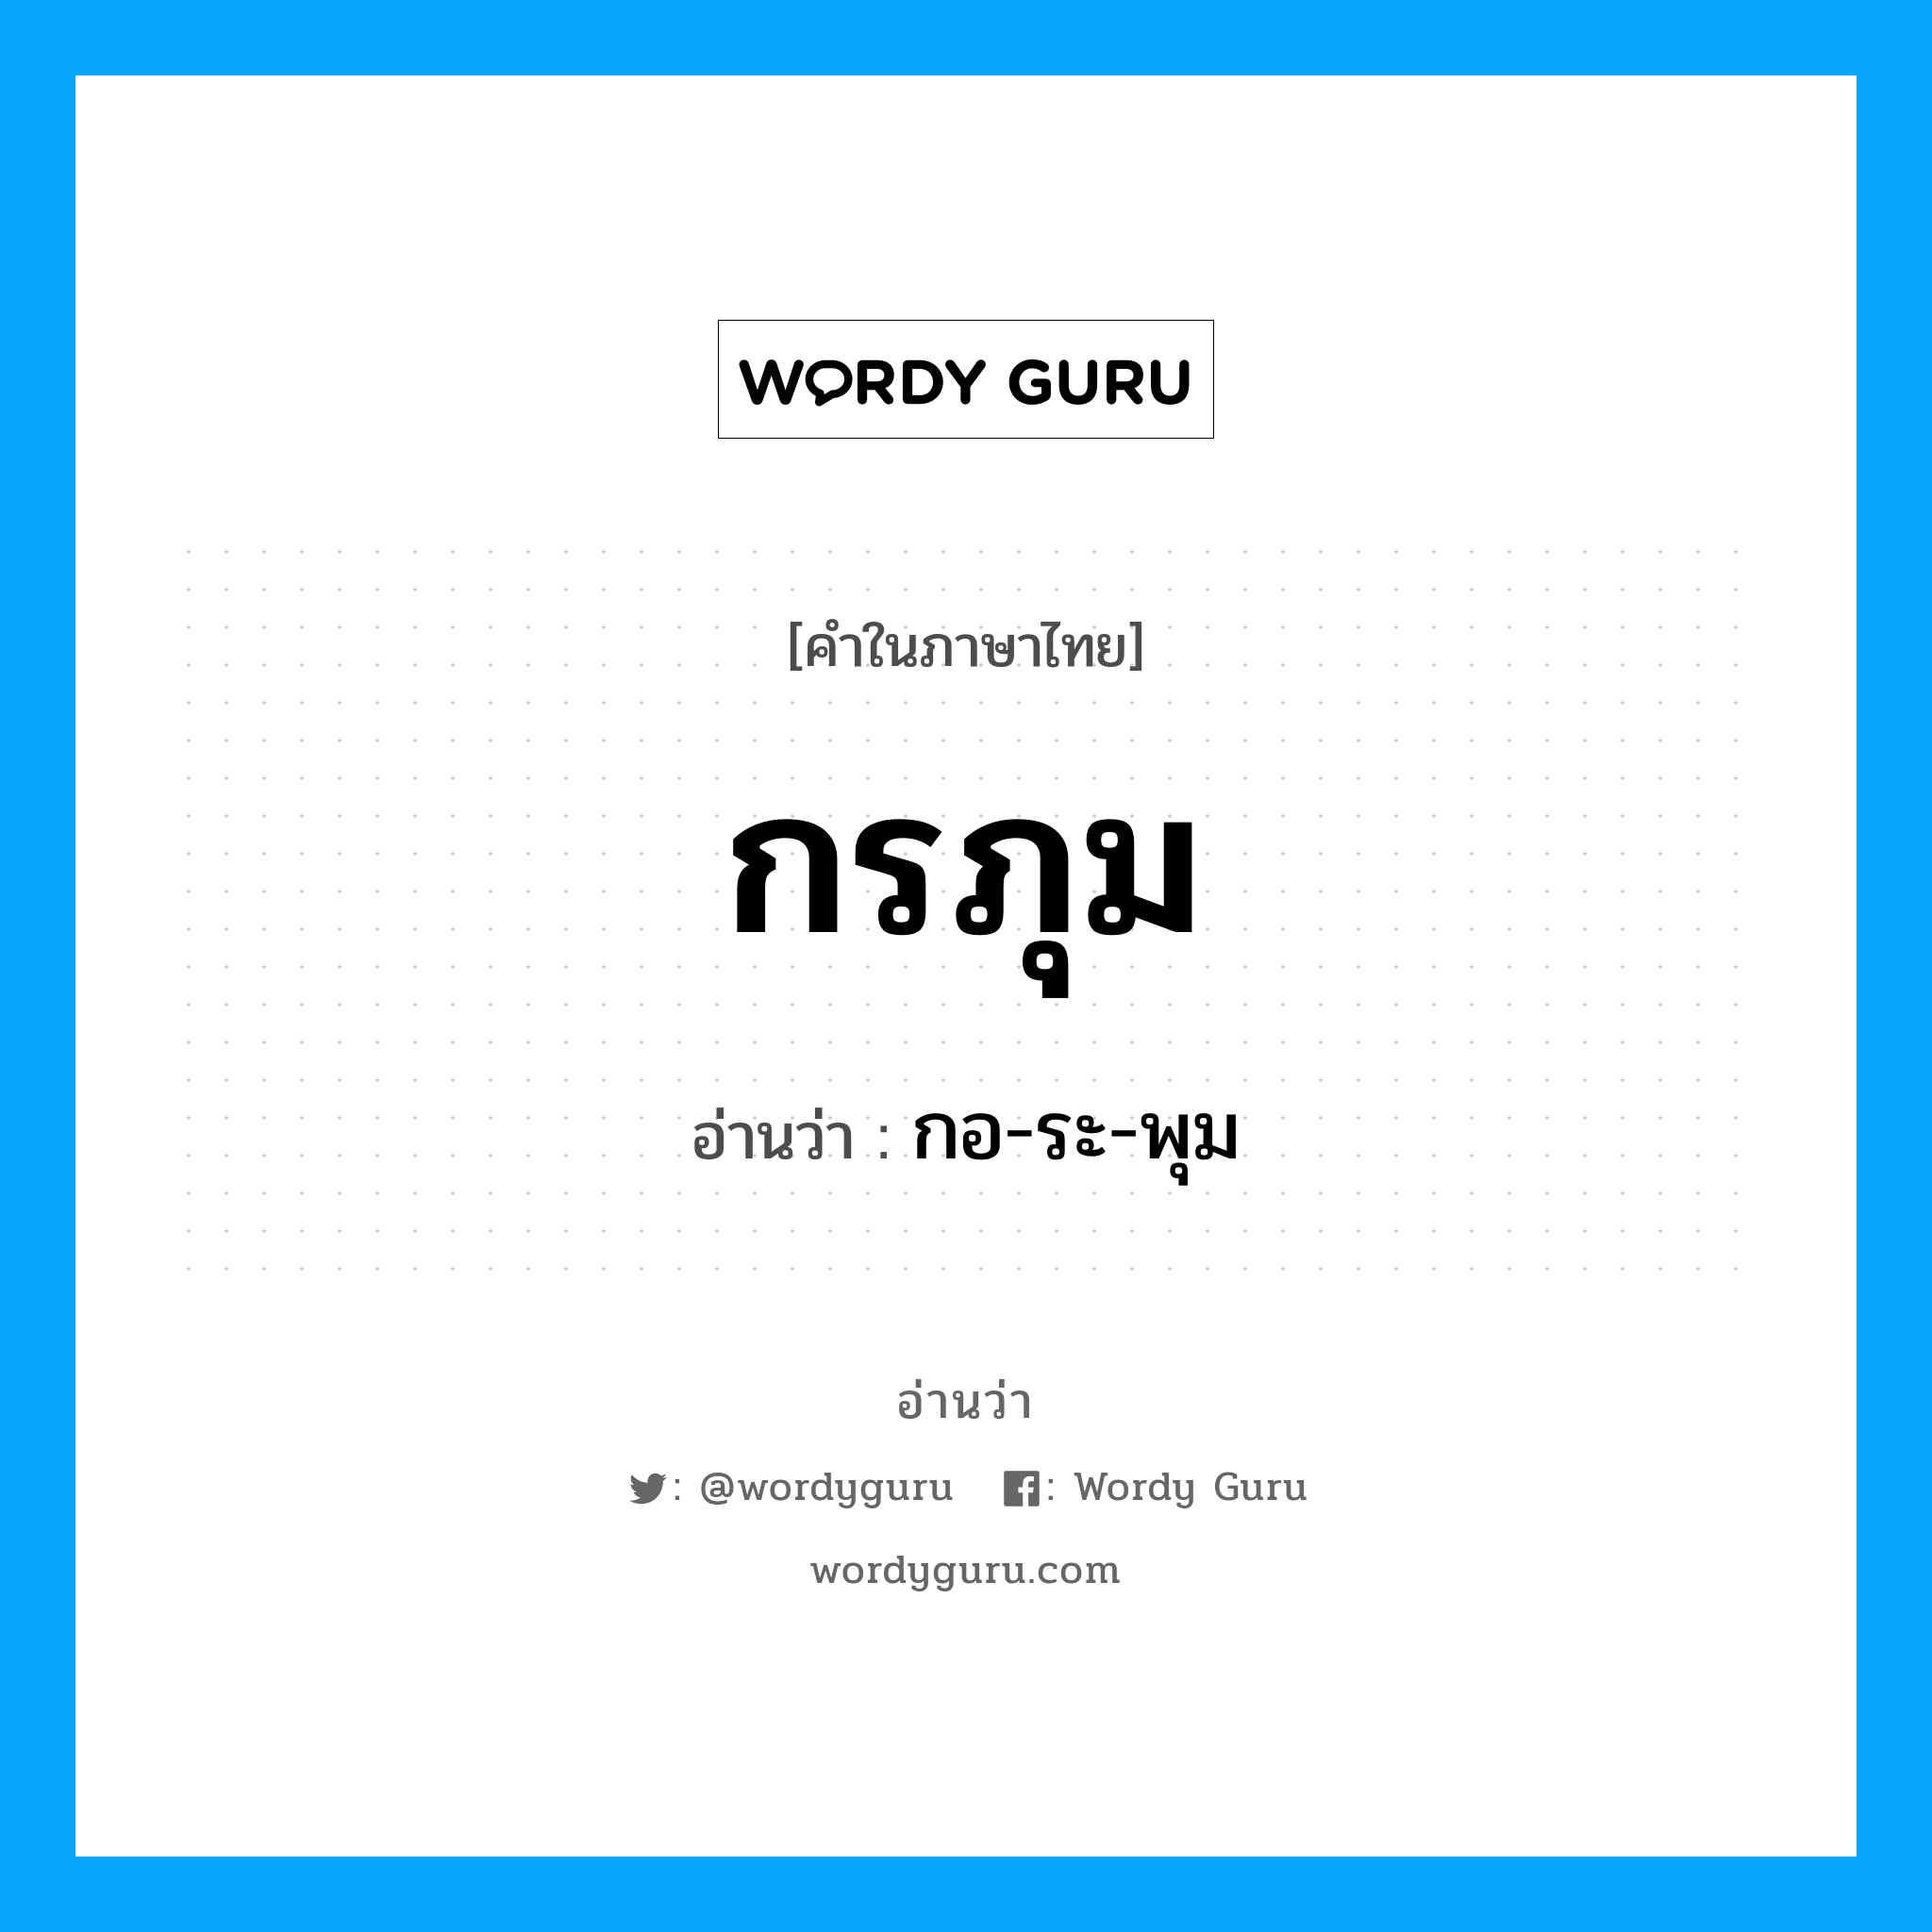 กอ-ระ-พุม เป็นคำอ่านของคำไหน?, คำในภาษาไทย กอ-ระ-พุม อ่านว่า กรภุม